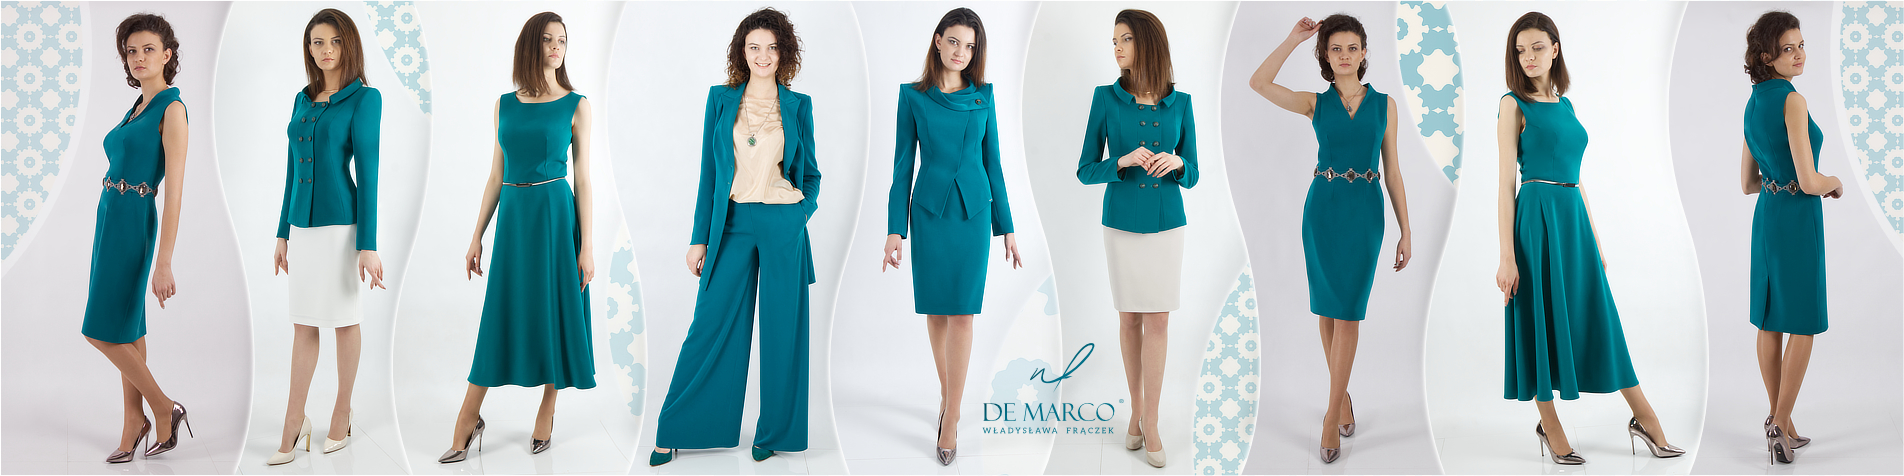 Zielony garnitur damski, garsonka, kostium do pracy i sukienka na wesele polskiej marki De Marco. Wizytowa odzież damska od projektanta